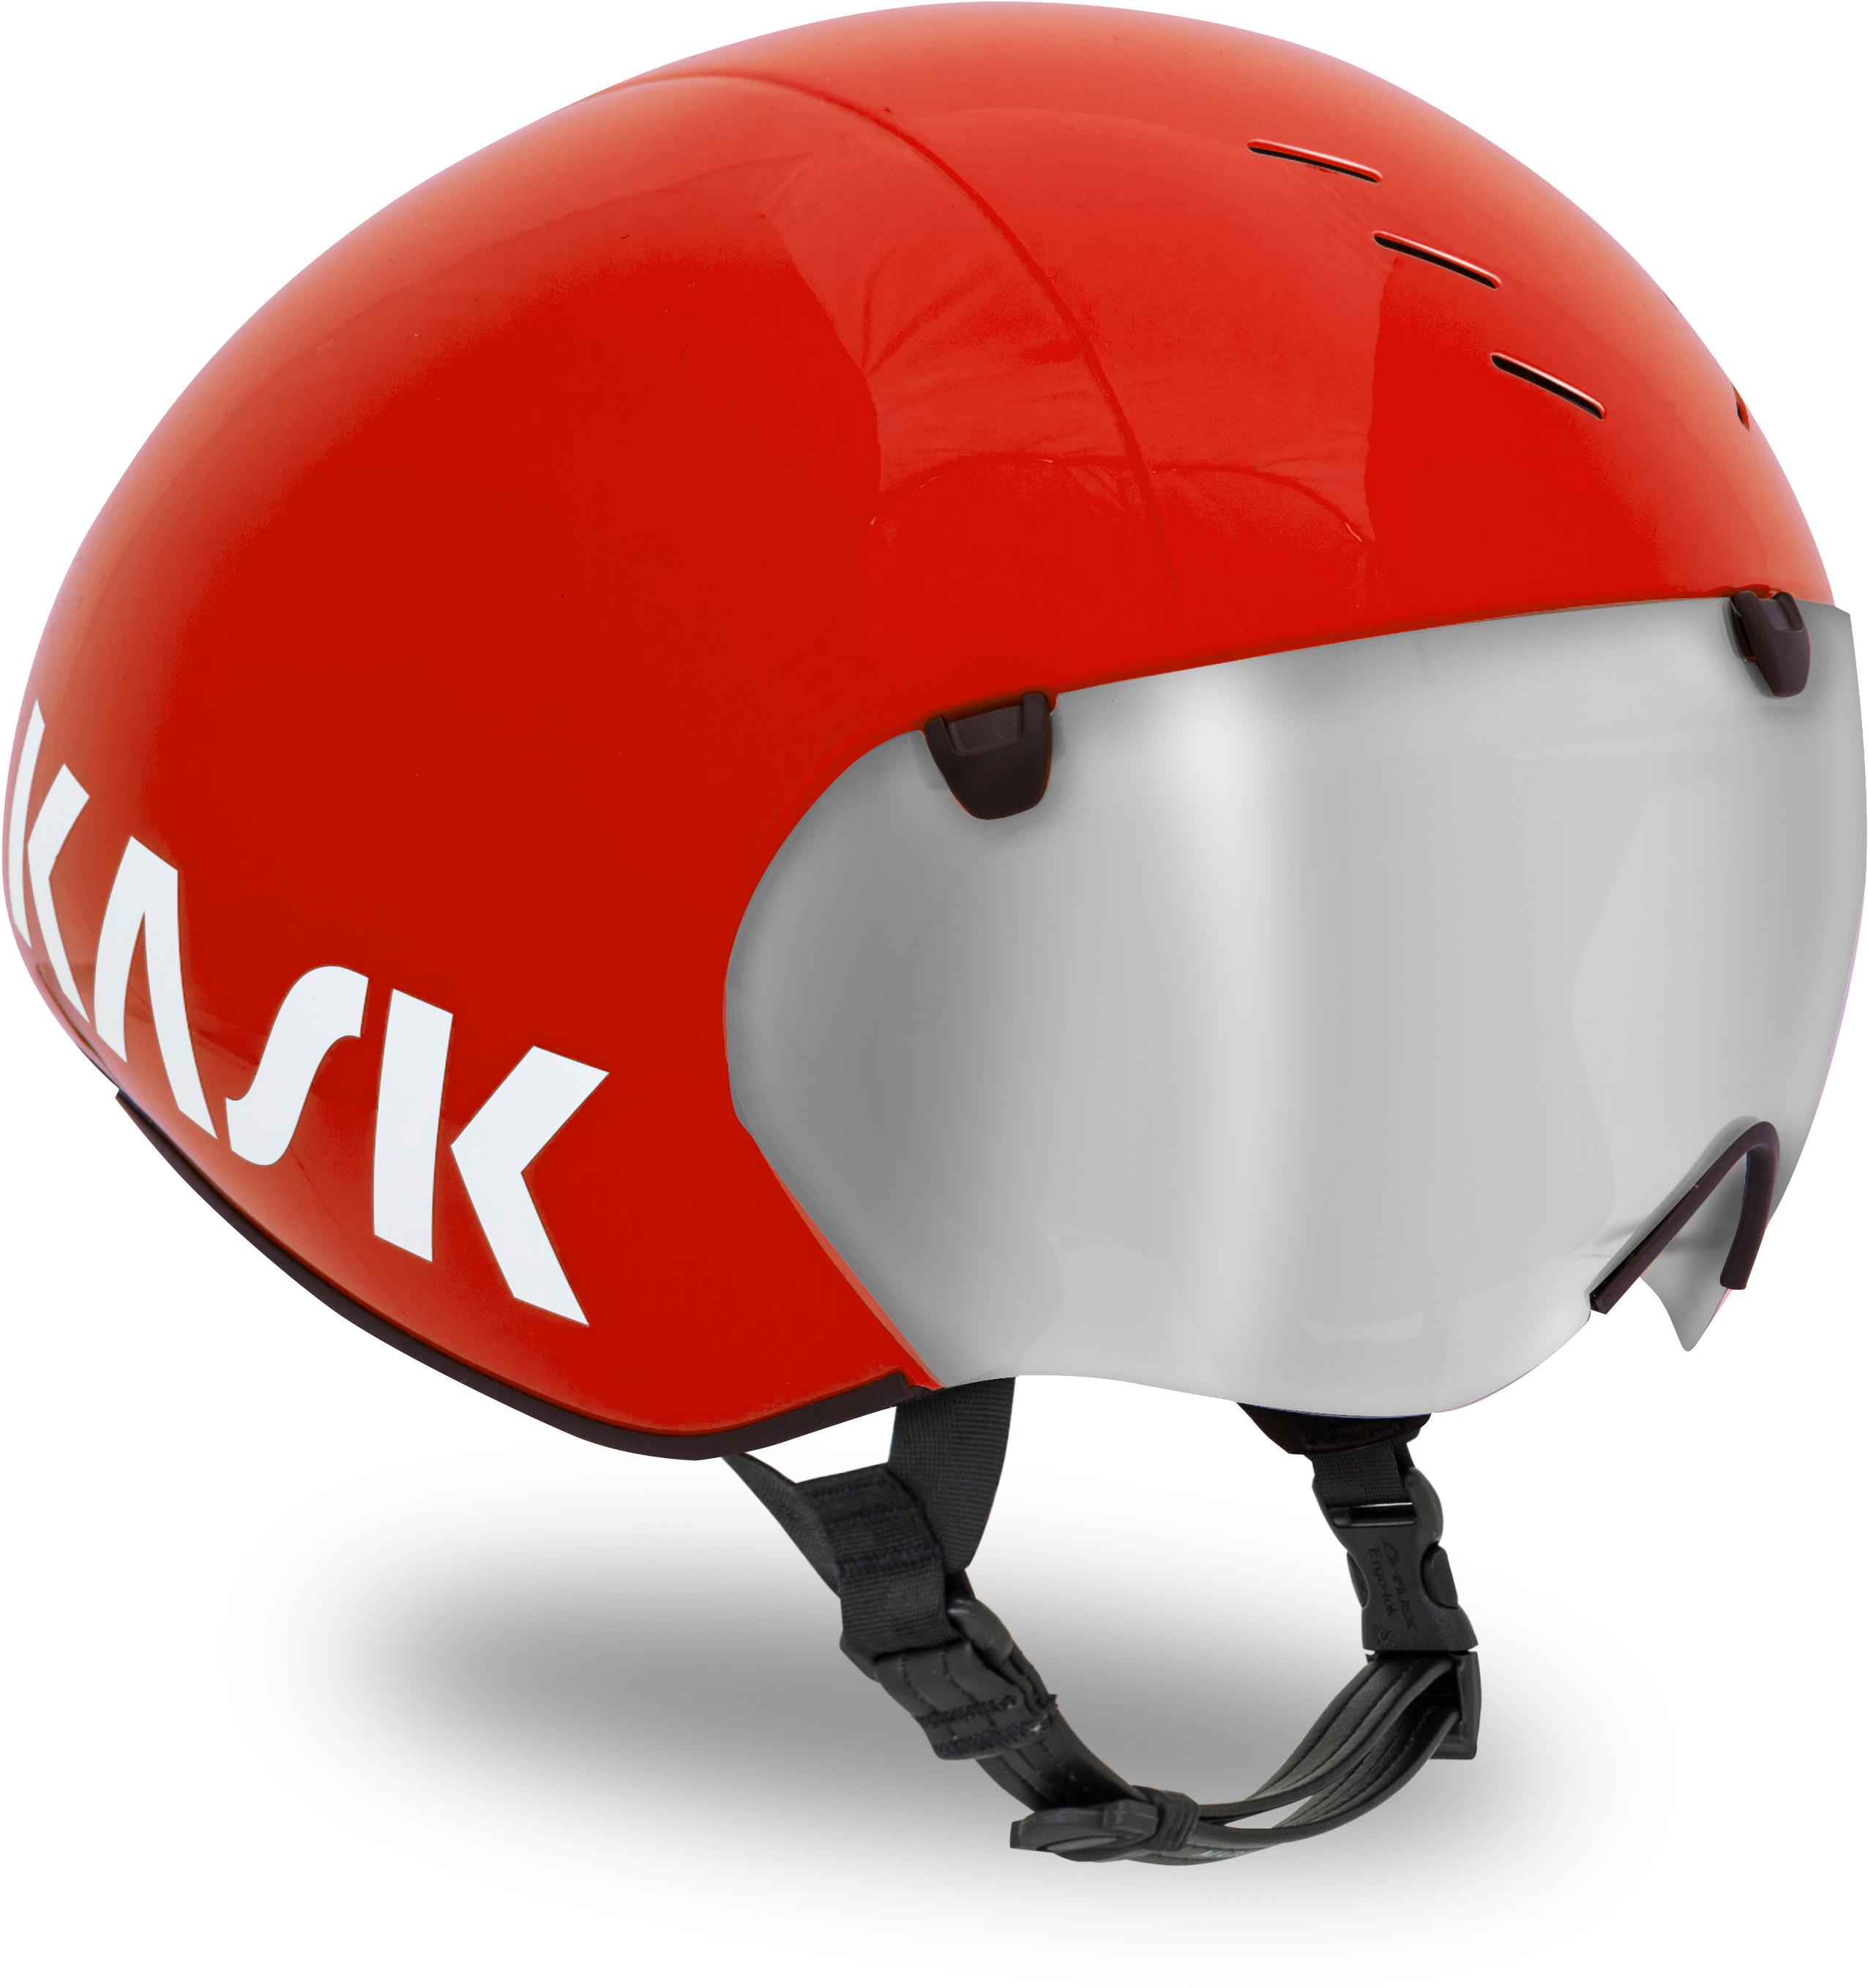 Kask Bambino Pro Tt Helmet Red, Medium